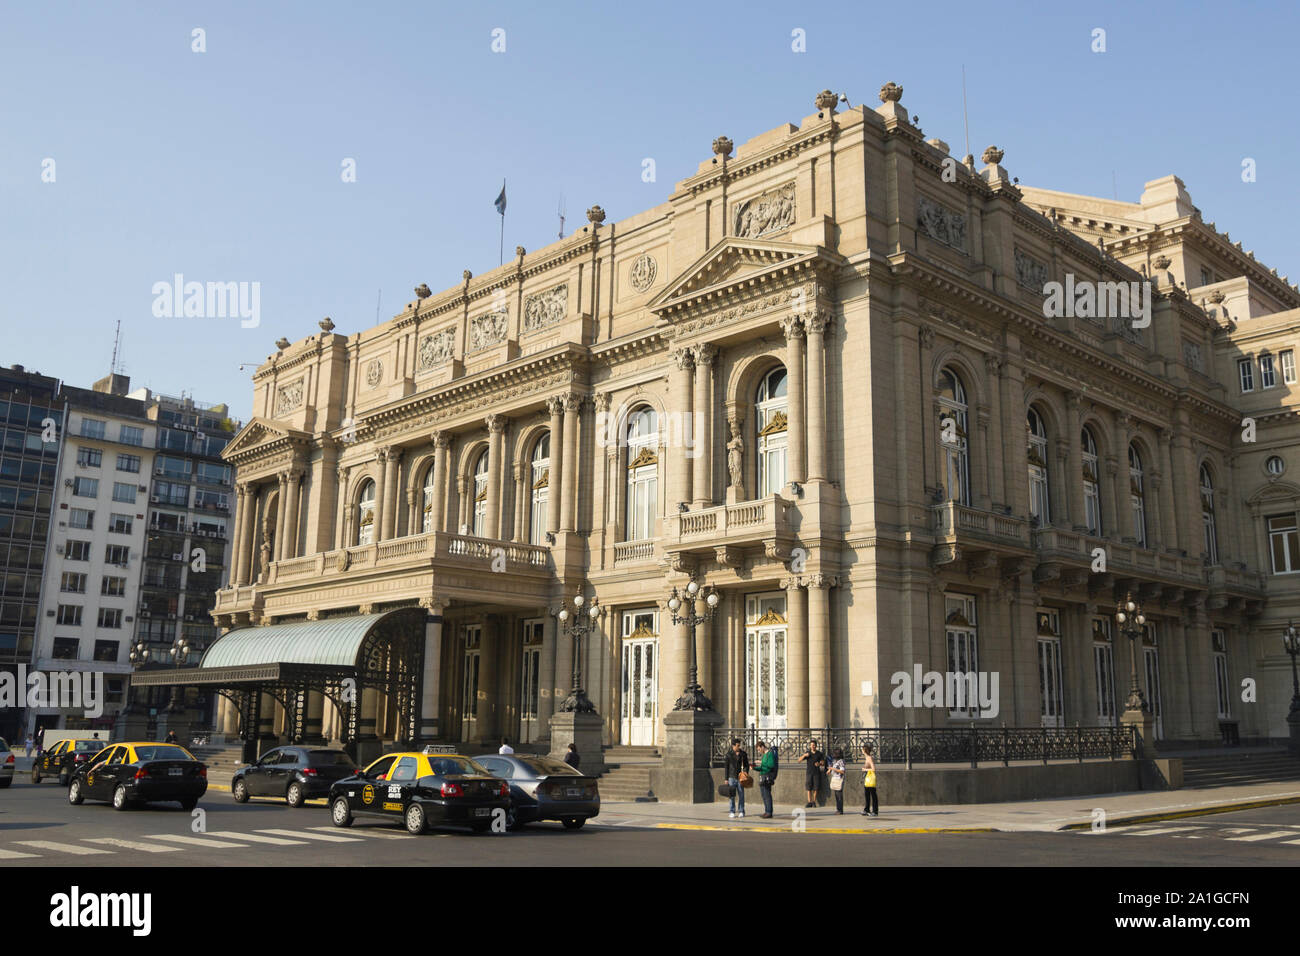 BUENOS AIRES - OKT 1: Colon Theater am 1. Oktober 2012 in Buenos Aires, Argentinien. Das Opernhaus gilt als einer der Top 5 der Welt Konzert hal Stockfoto